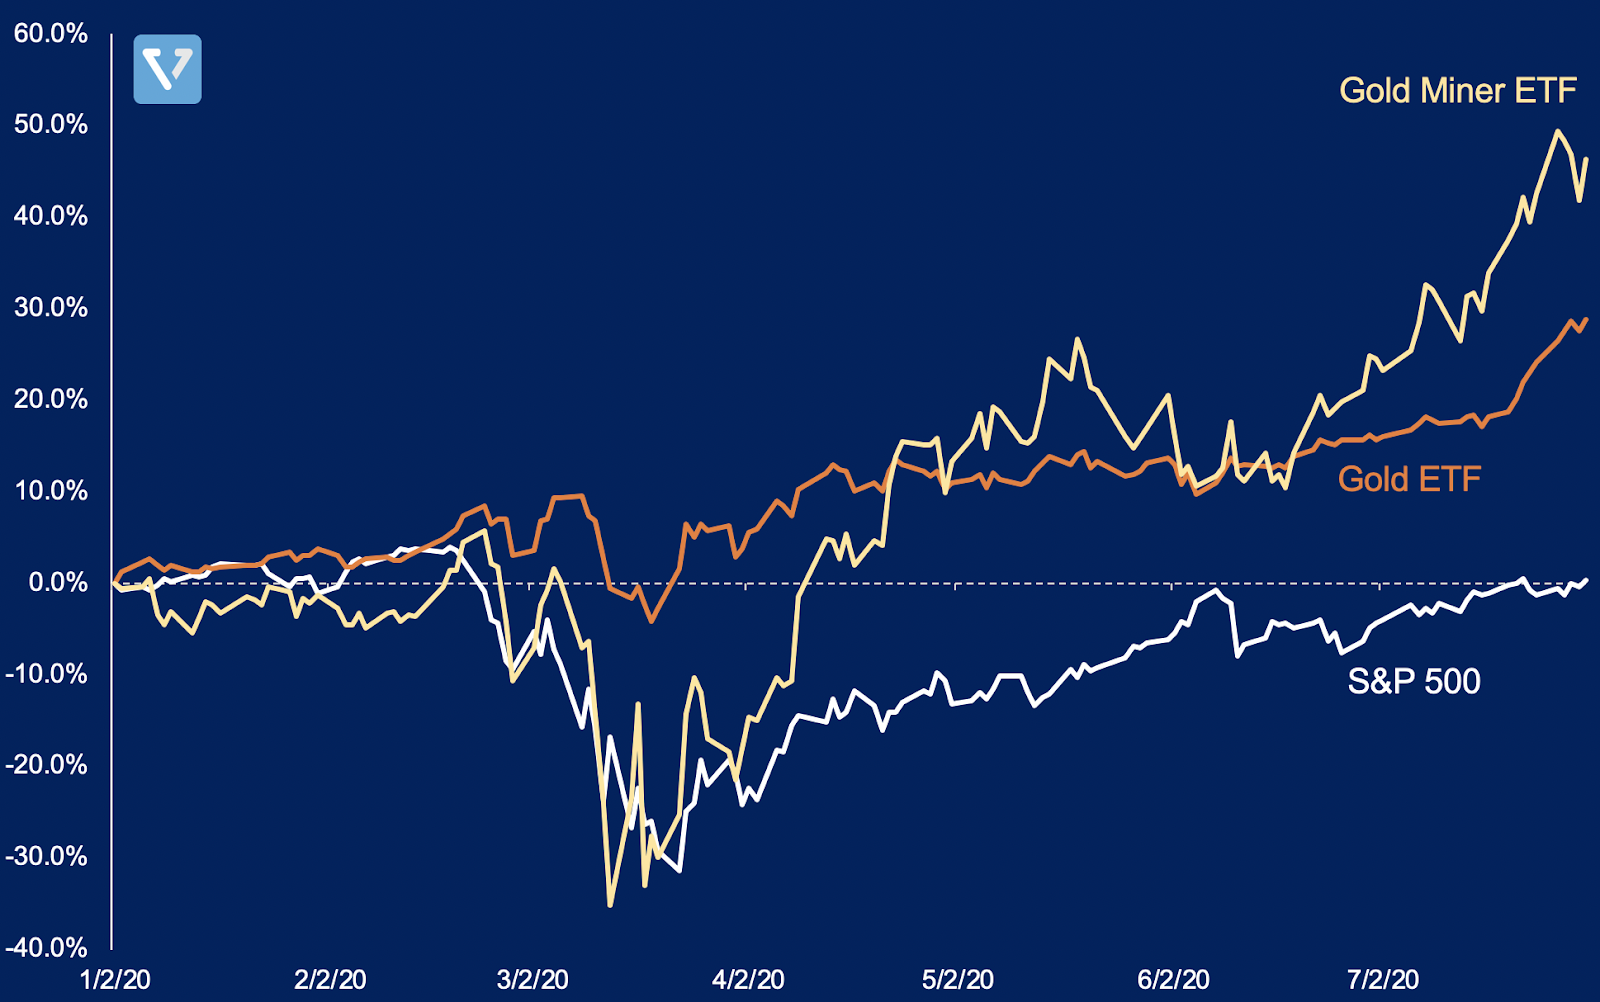 Price performance of Gold ETF vs Gold Miner ETF vs S&P 500